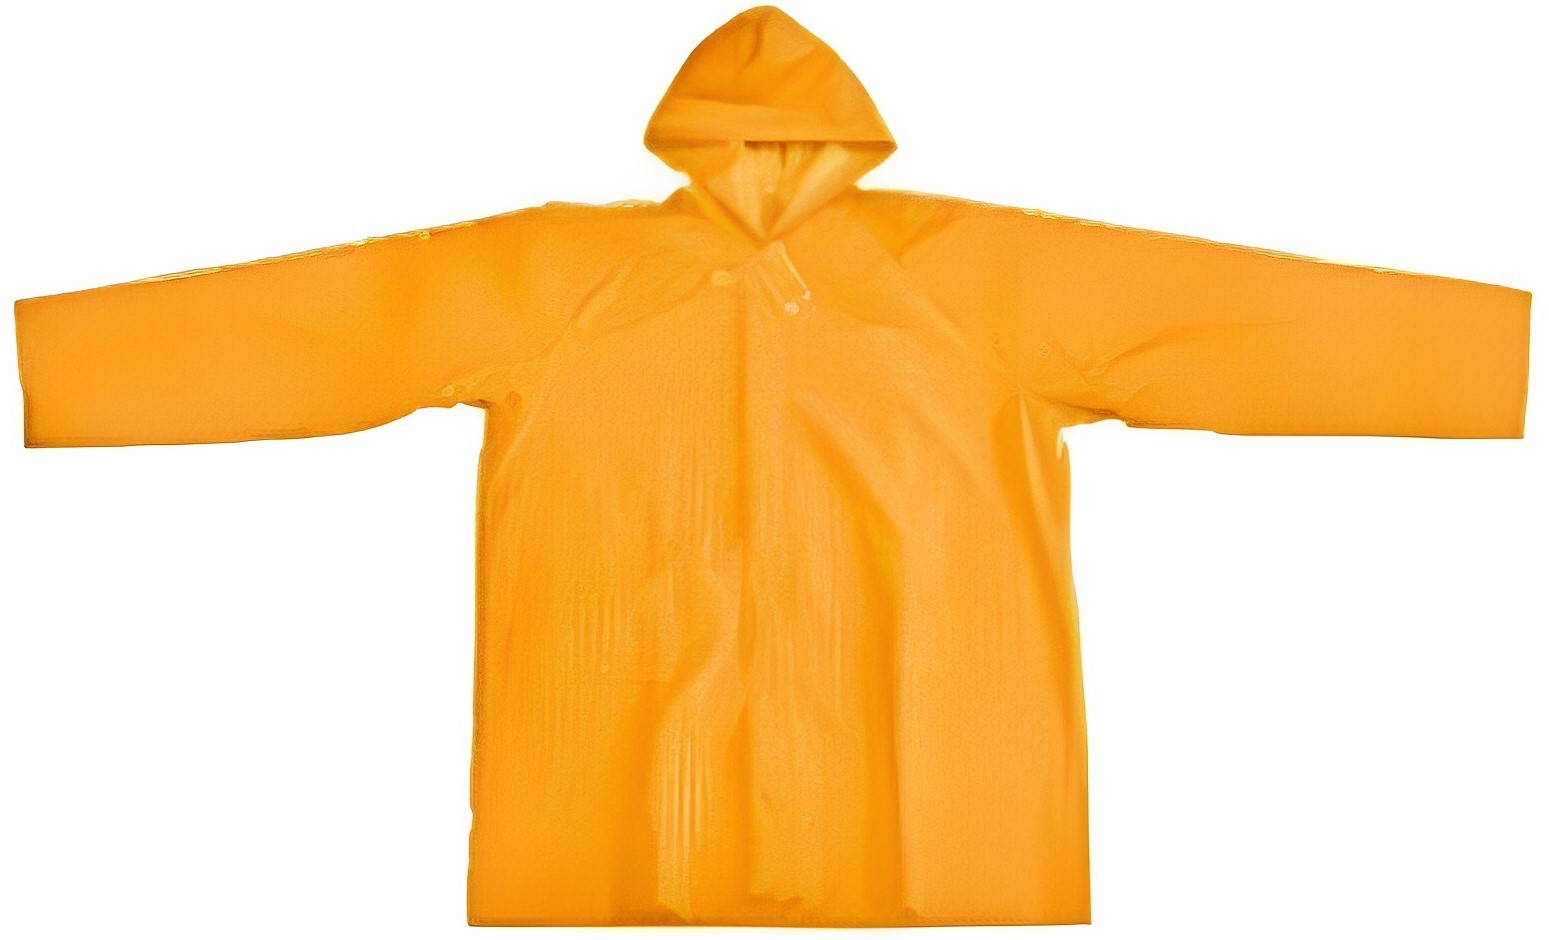 Hình ảnh 3 của mặt hàng Bộ đồ áo mưa bảo hộ có mũ cộc tay size L Tolsen 45197